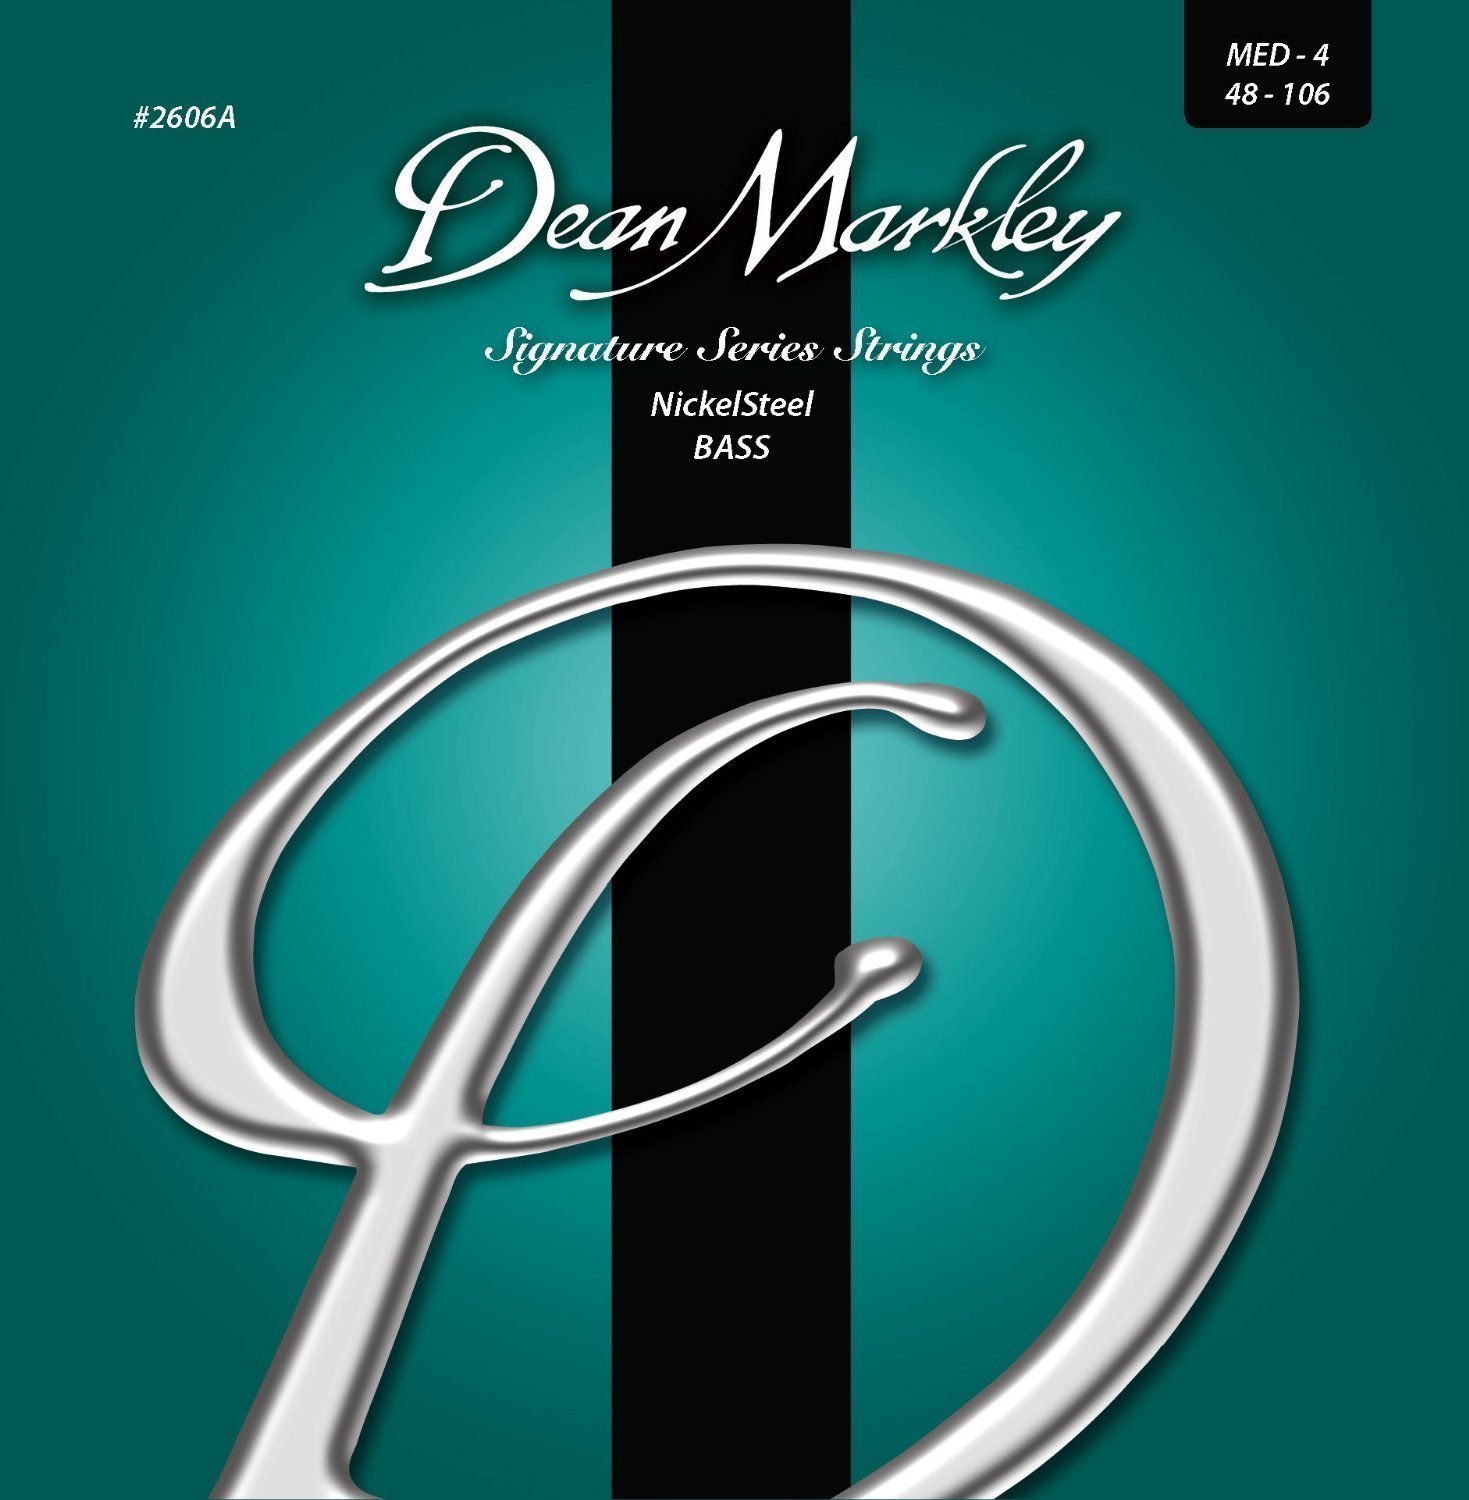 Struny pro baskytaru Dean Markley 2606A-MED